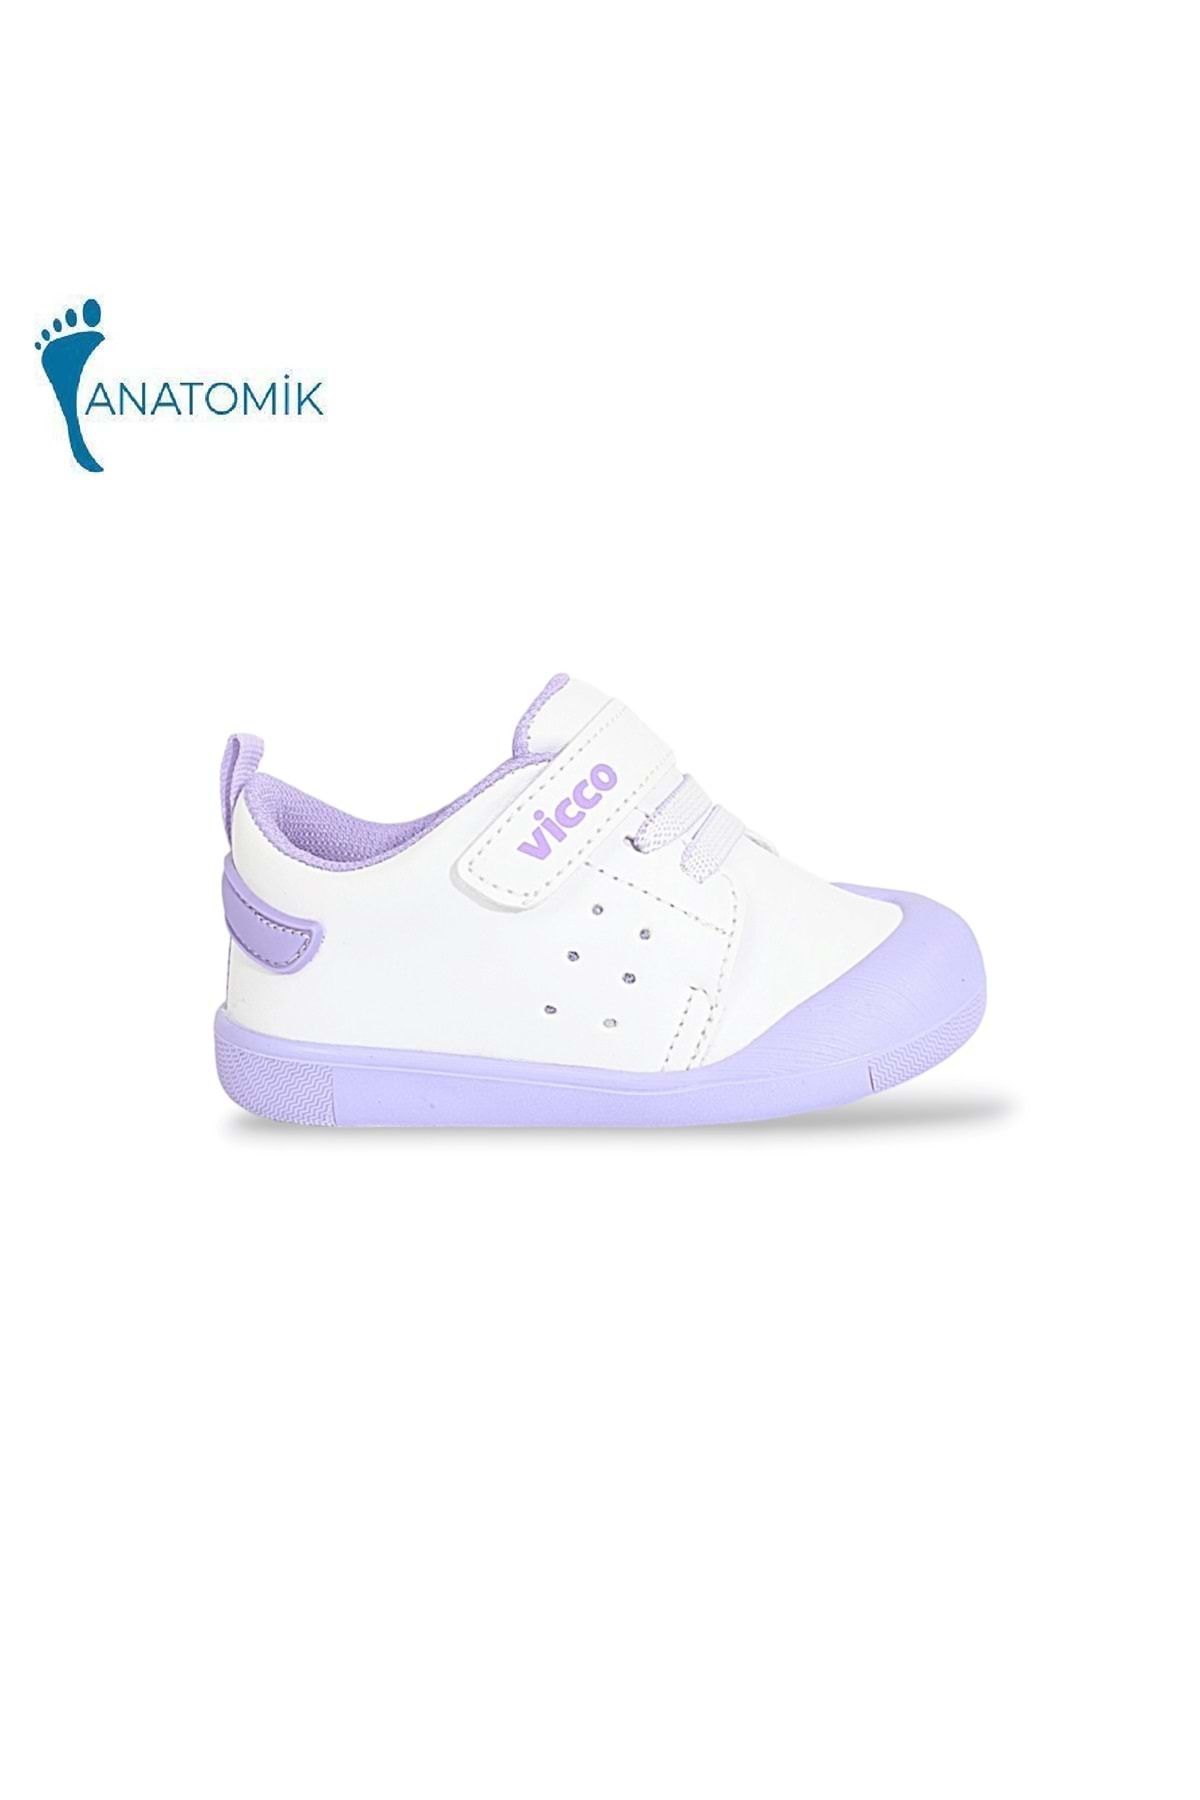 Vicco 950.E23Y.211 İlk Adım Anatomik Tabanlı Bebek Ayakkabısı - NKT01837-Beyaz Lila-19